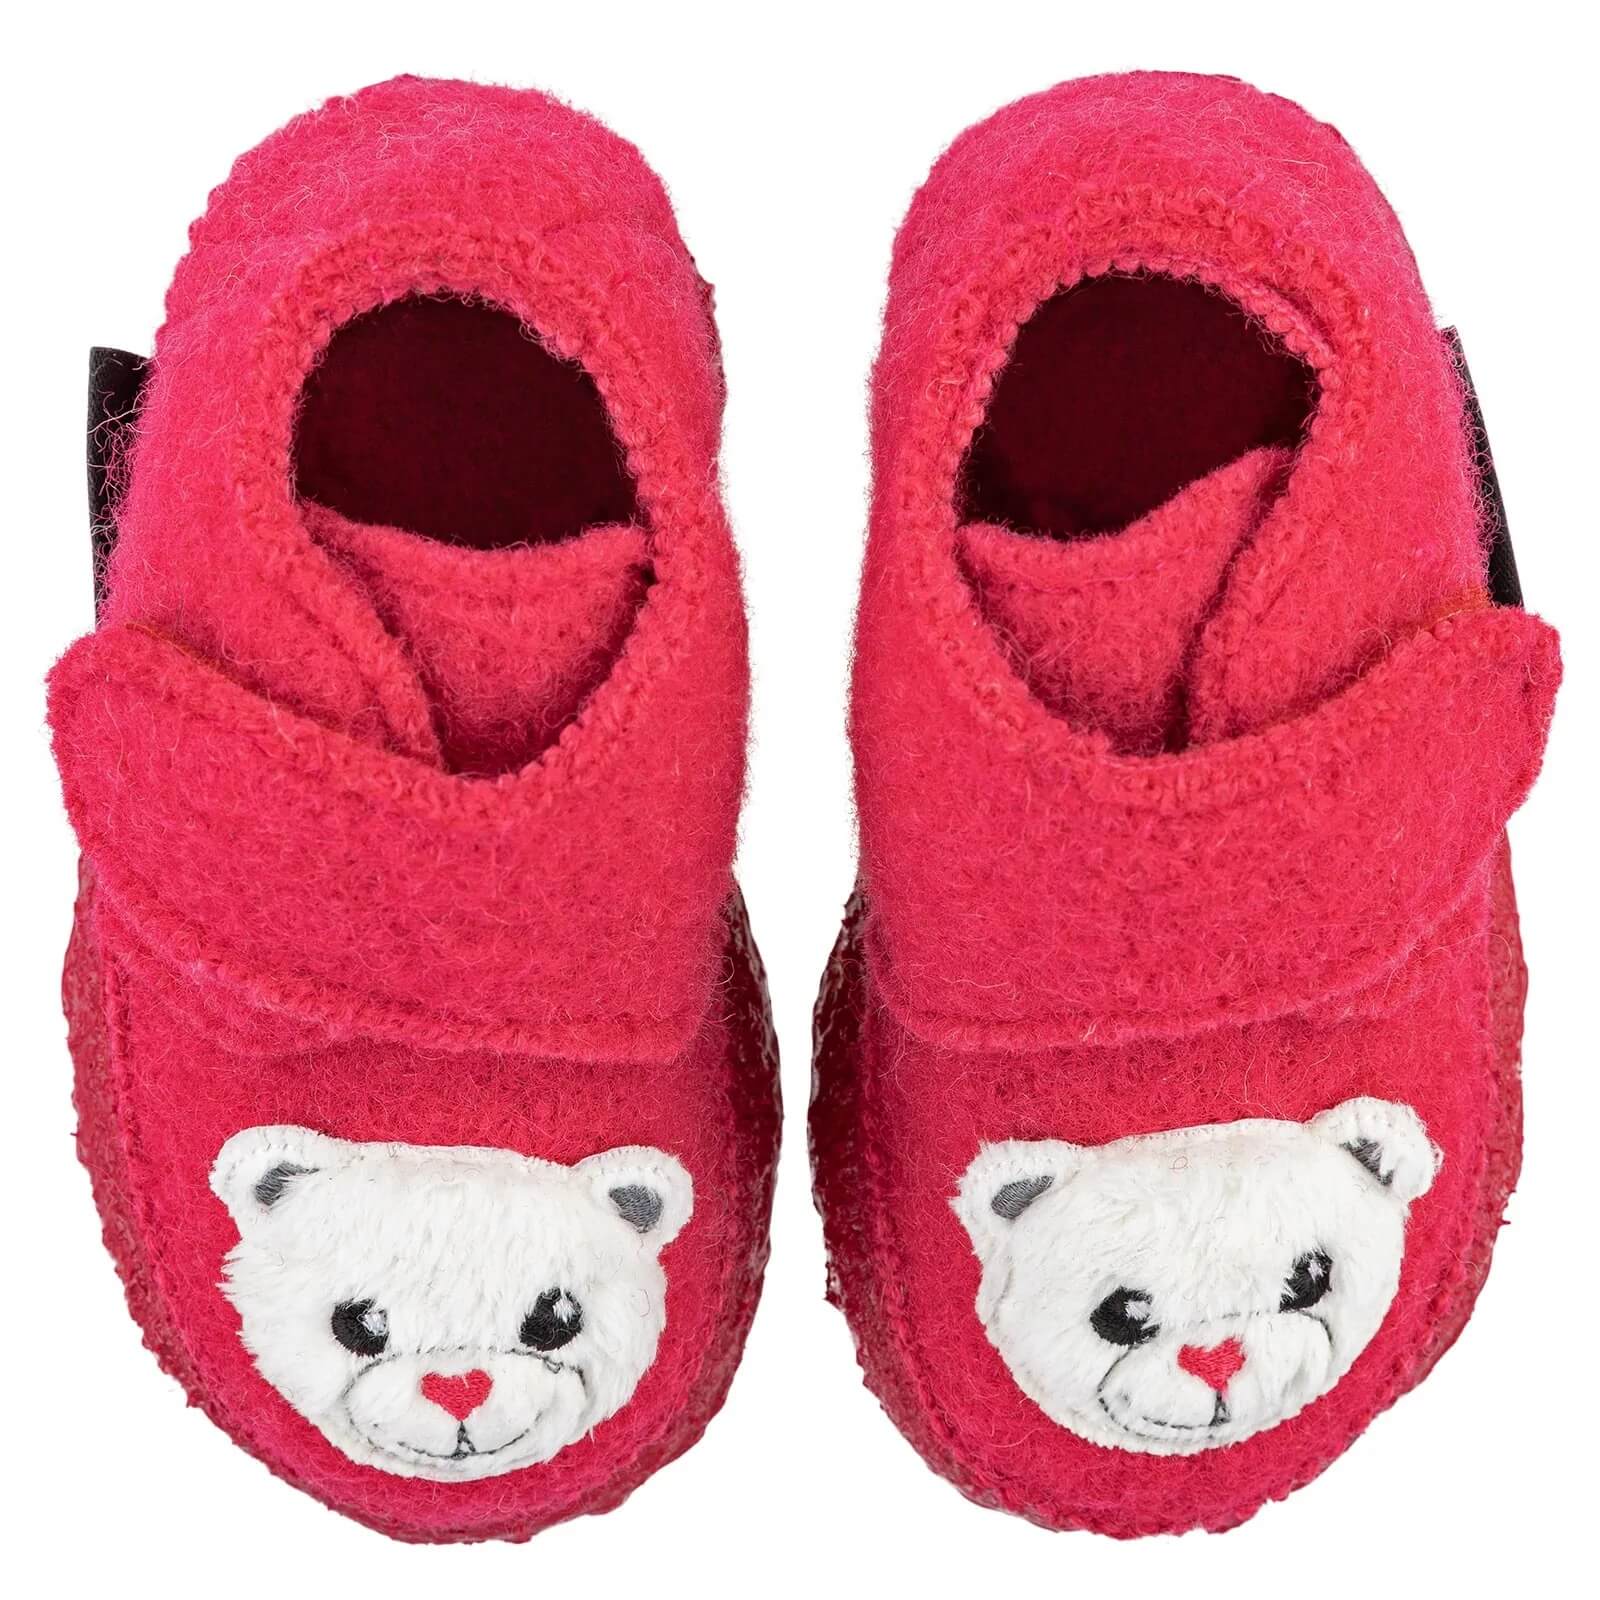 Incaltaminte de interior pentru bebeluși Nanga din lana fiarta, Teddy bear